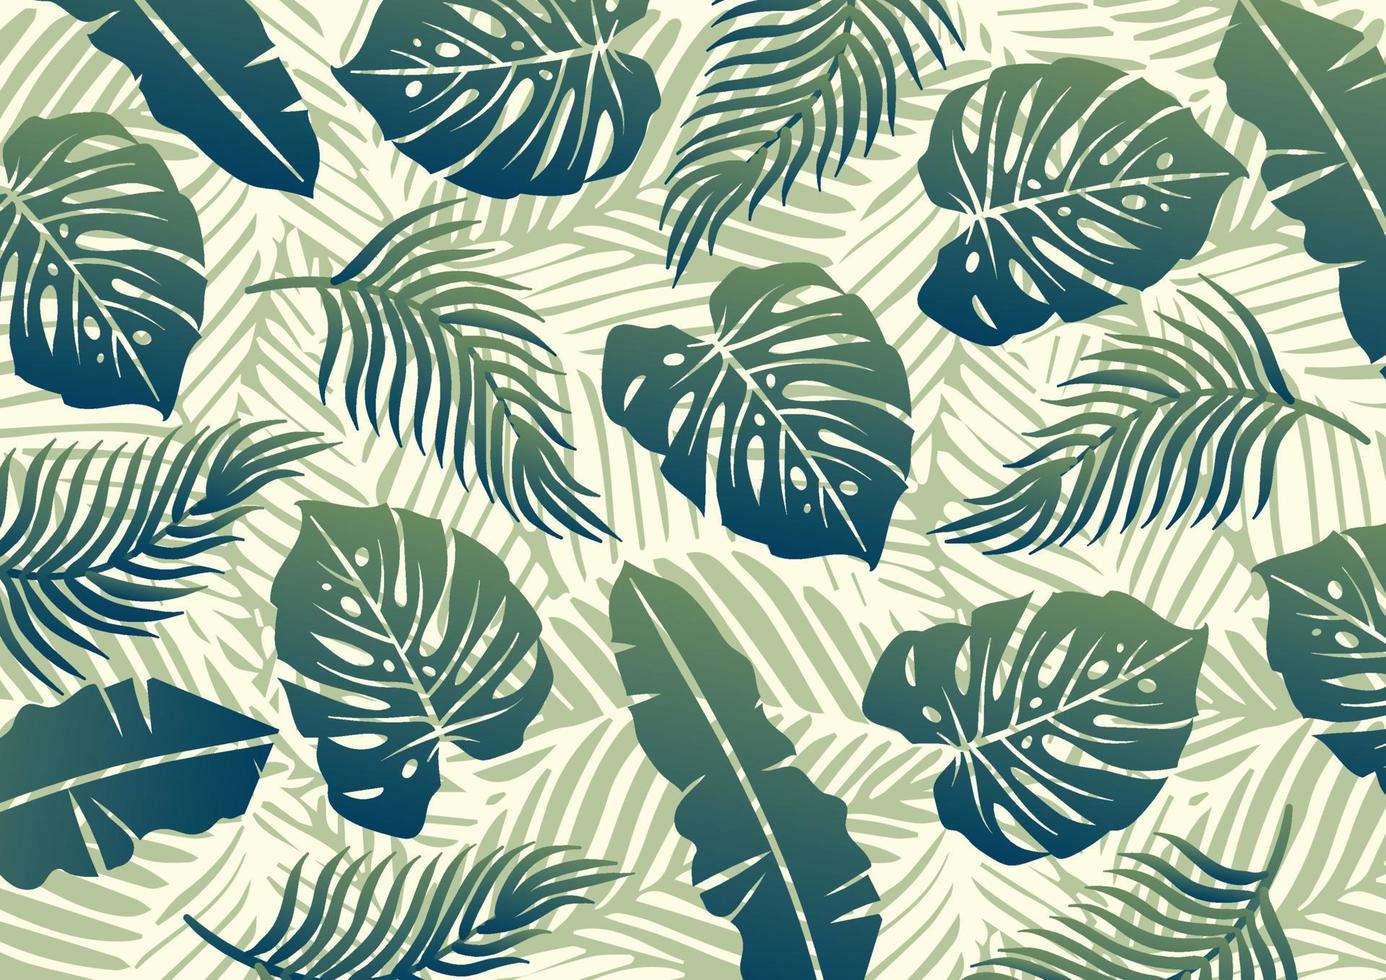 design de padrão de fundo de folha tropical vetor